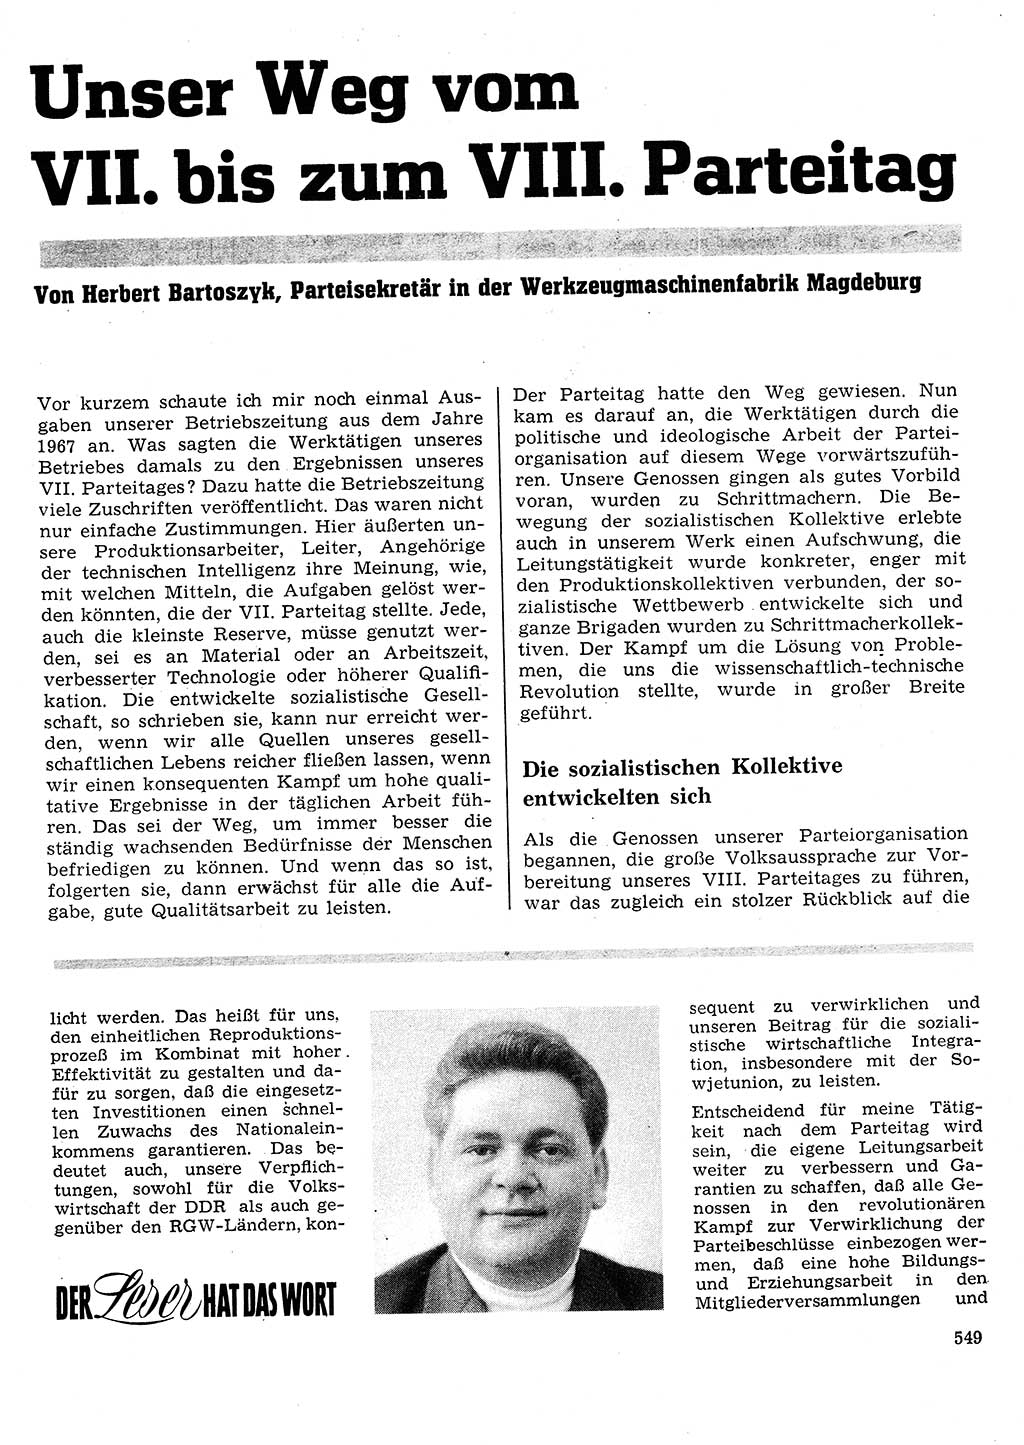 Neuer Weg (NW), Organ des Zentralkomitees (ZK) der SED (Sozialistische Einheitspartei Deutschlands) für Fragen des Parteilebens, 26. Jahrgang [Deutsche Demokratische Republik (DDR)] 1971, Seite 549 (NW ZK SED DDR 1971, S. 549)